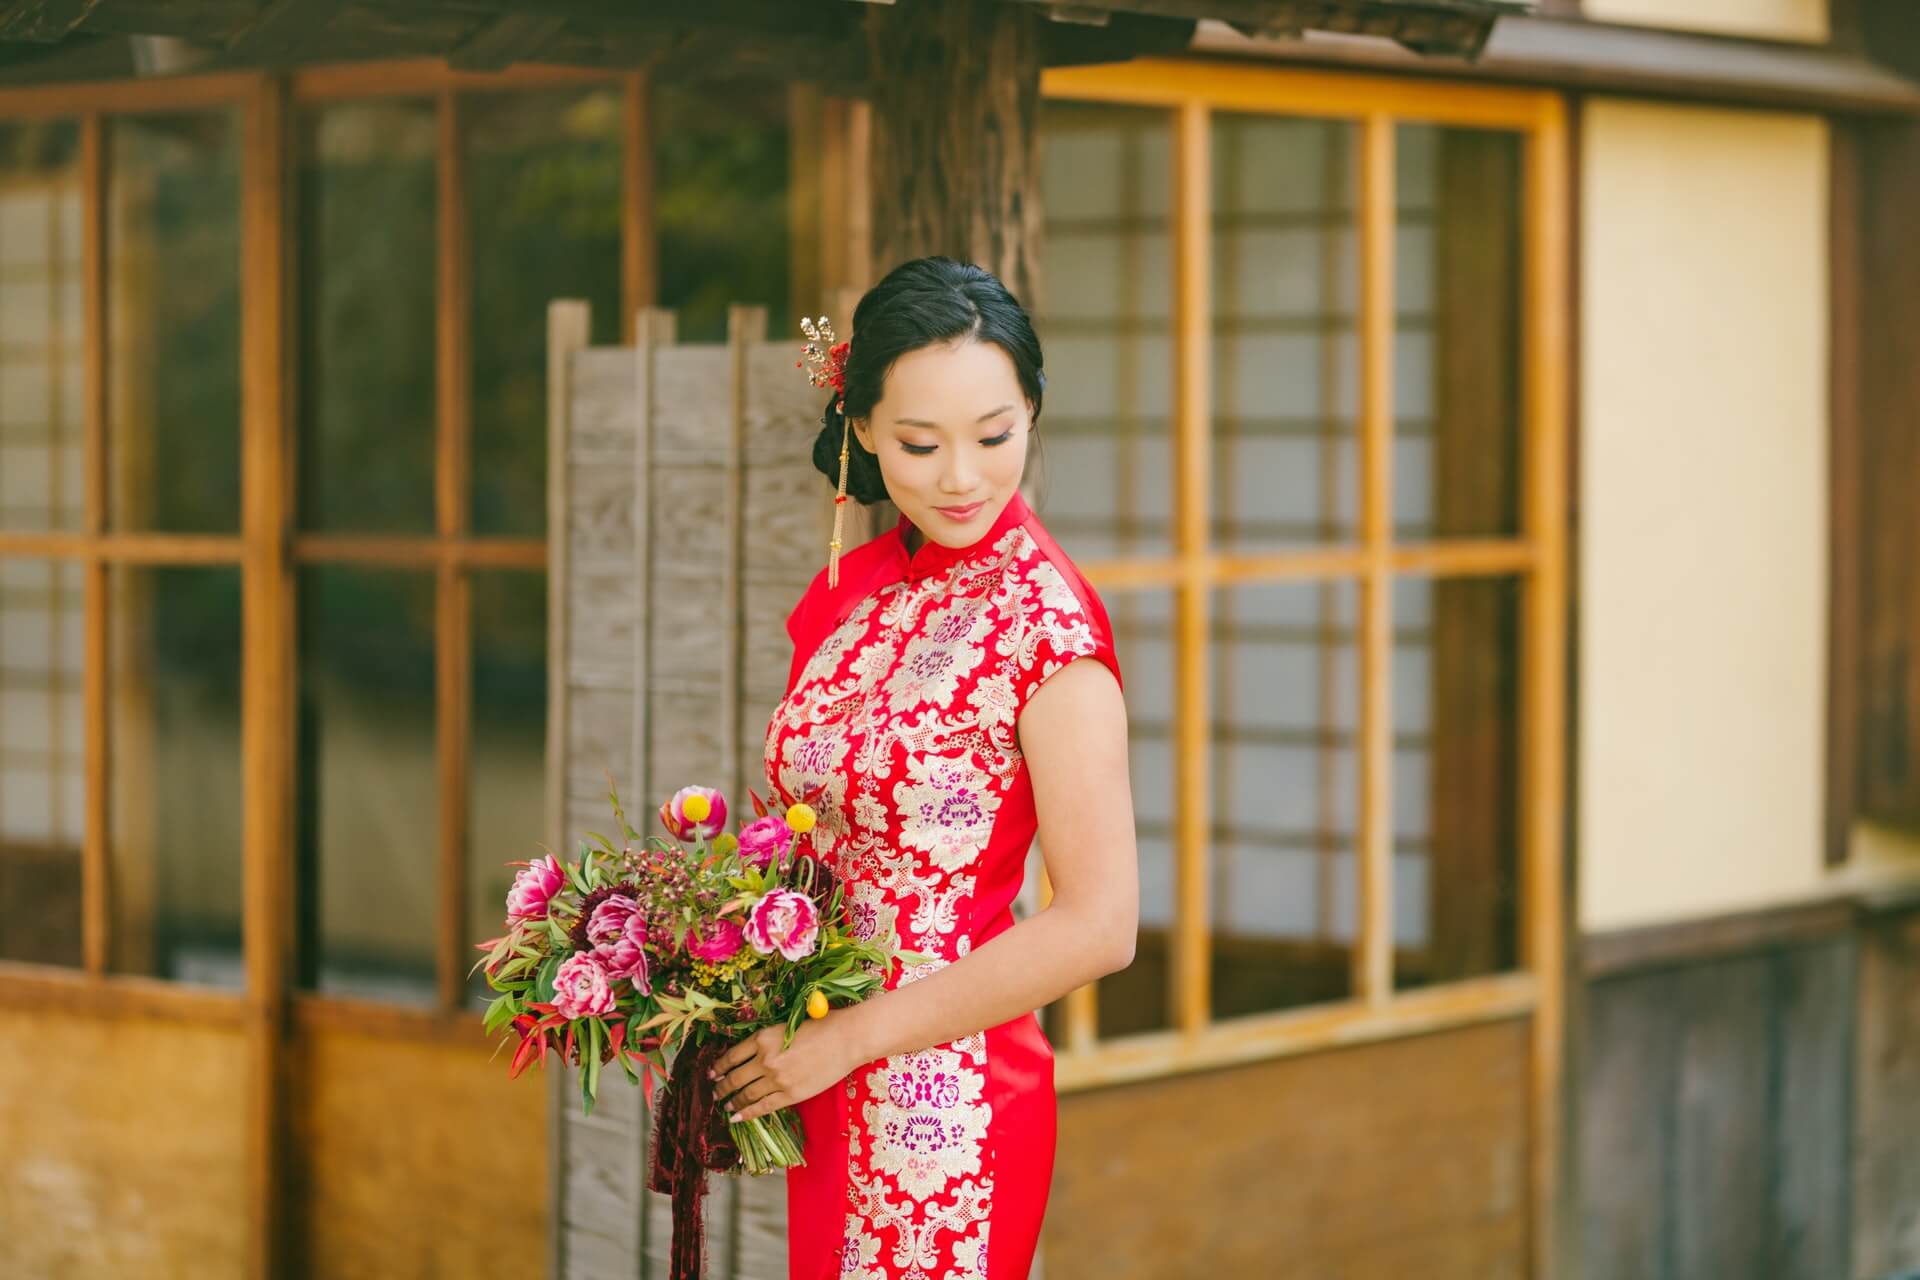 Chinese cheongsam dress